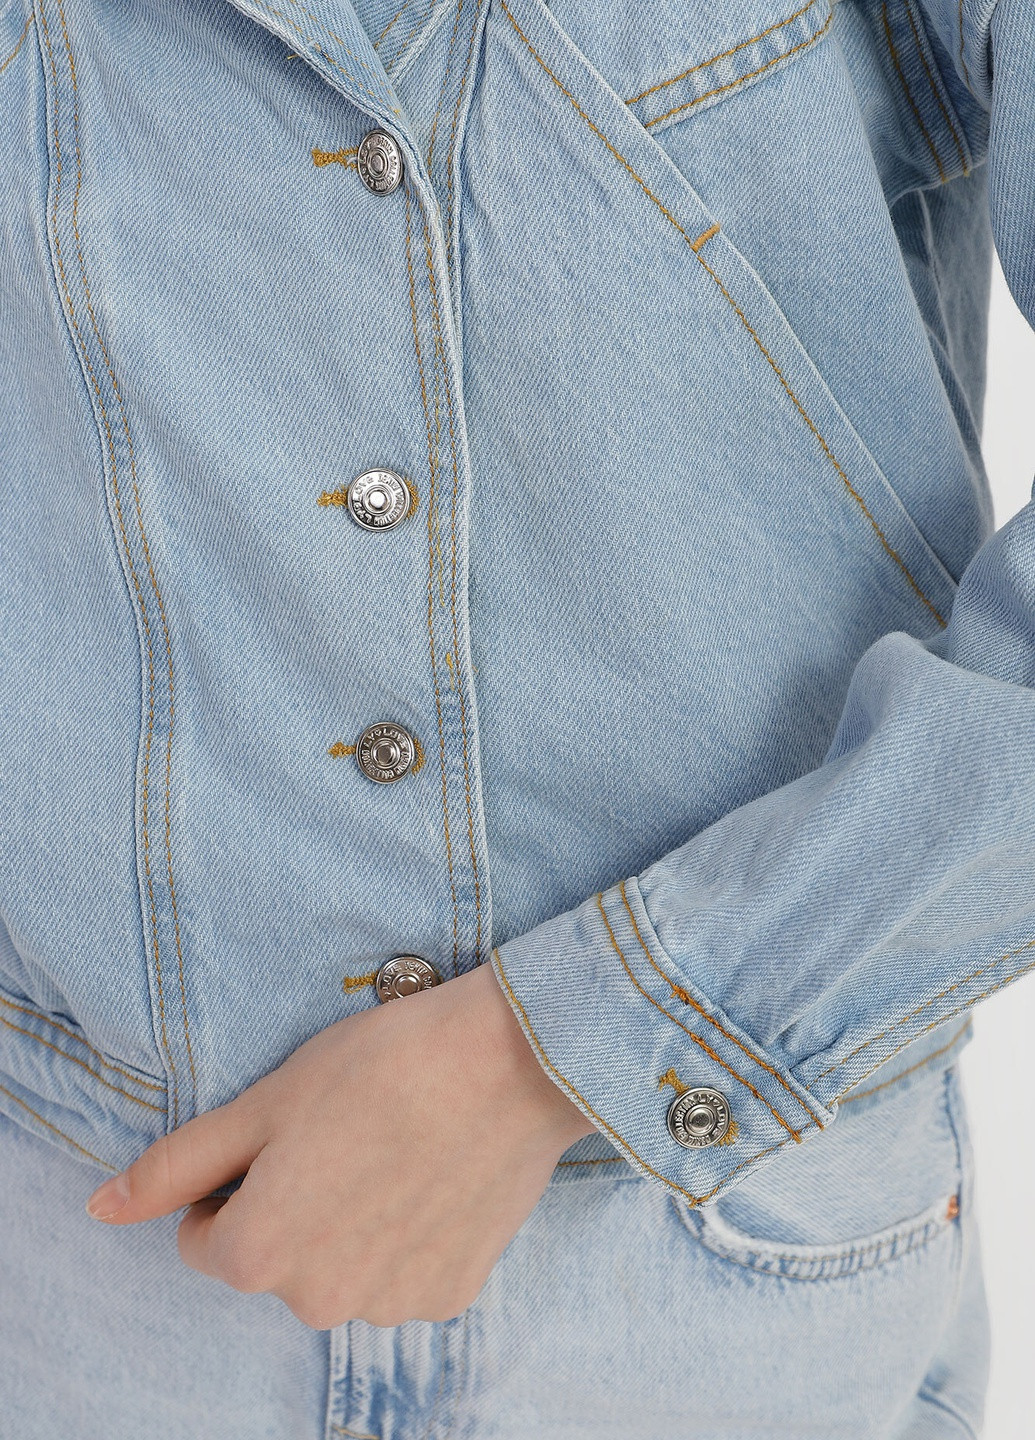 Синяя демисезонная джинсовая женская куртка Denim